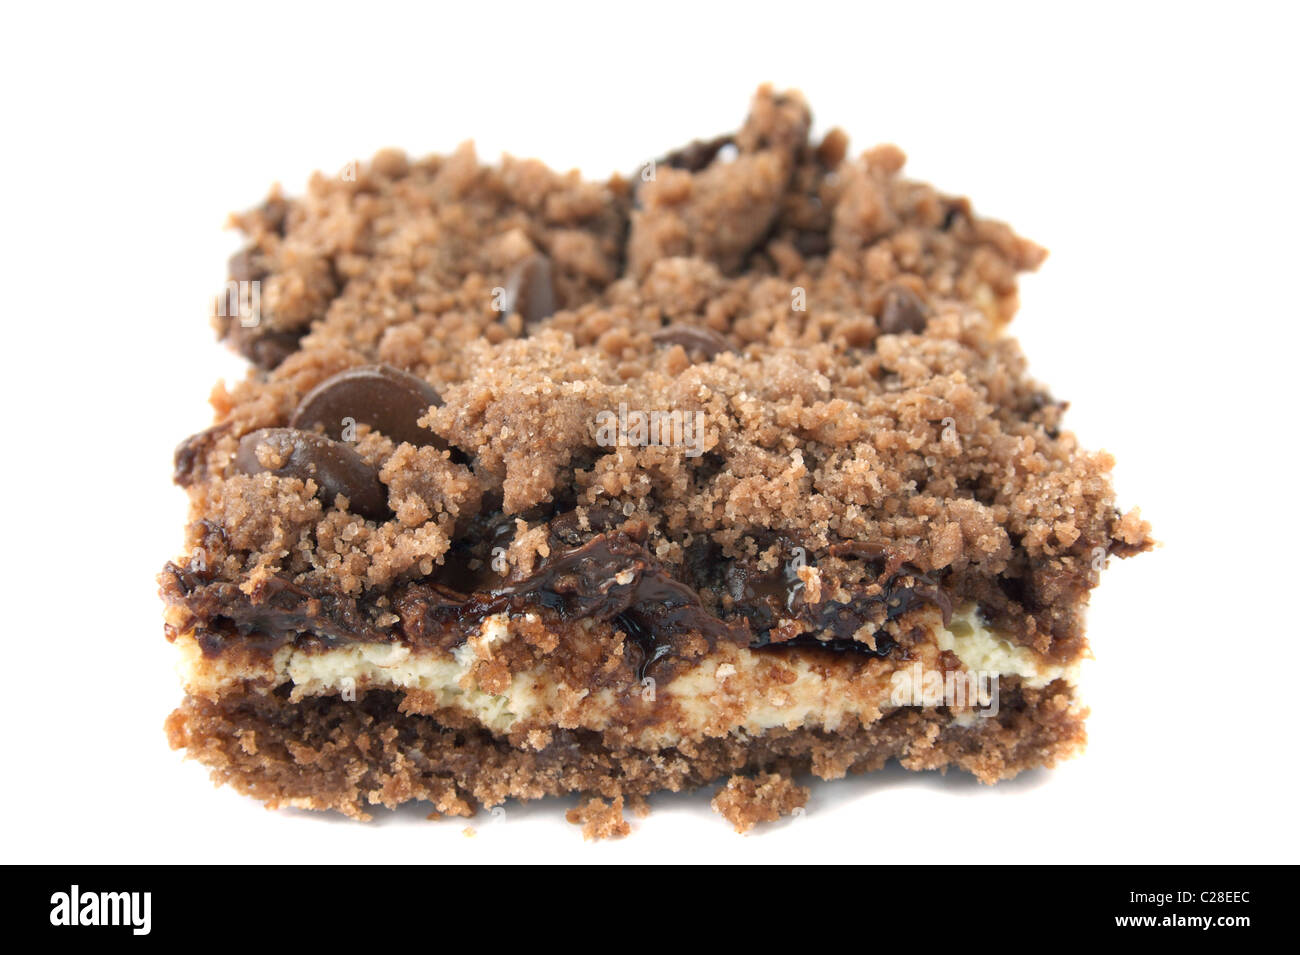 Eine köstliche Wüste umfasst, Schokoladenstückchen, Frischkäse, Eiern, Zucker, Rapsöl und deutsche Schokolade Kuchen-mix Stockfoto